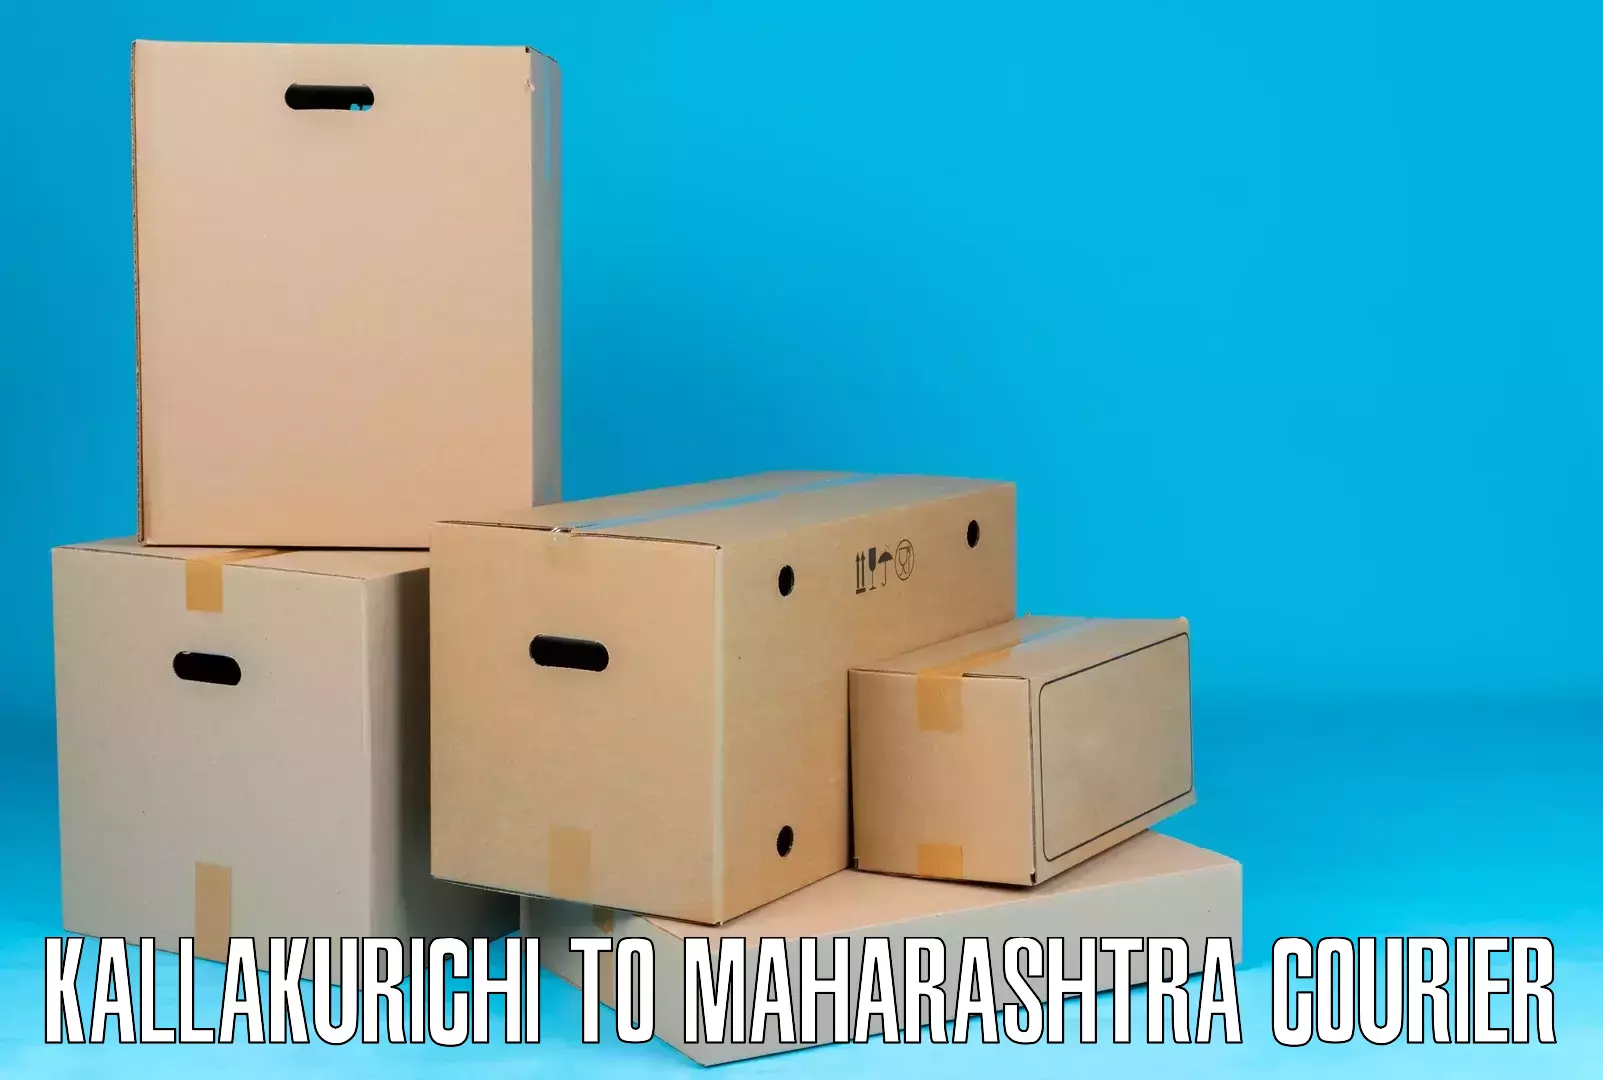 Door-to-door shipment in Kallakurichi to Mira Bhayandar